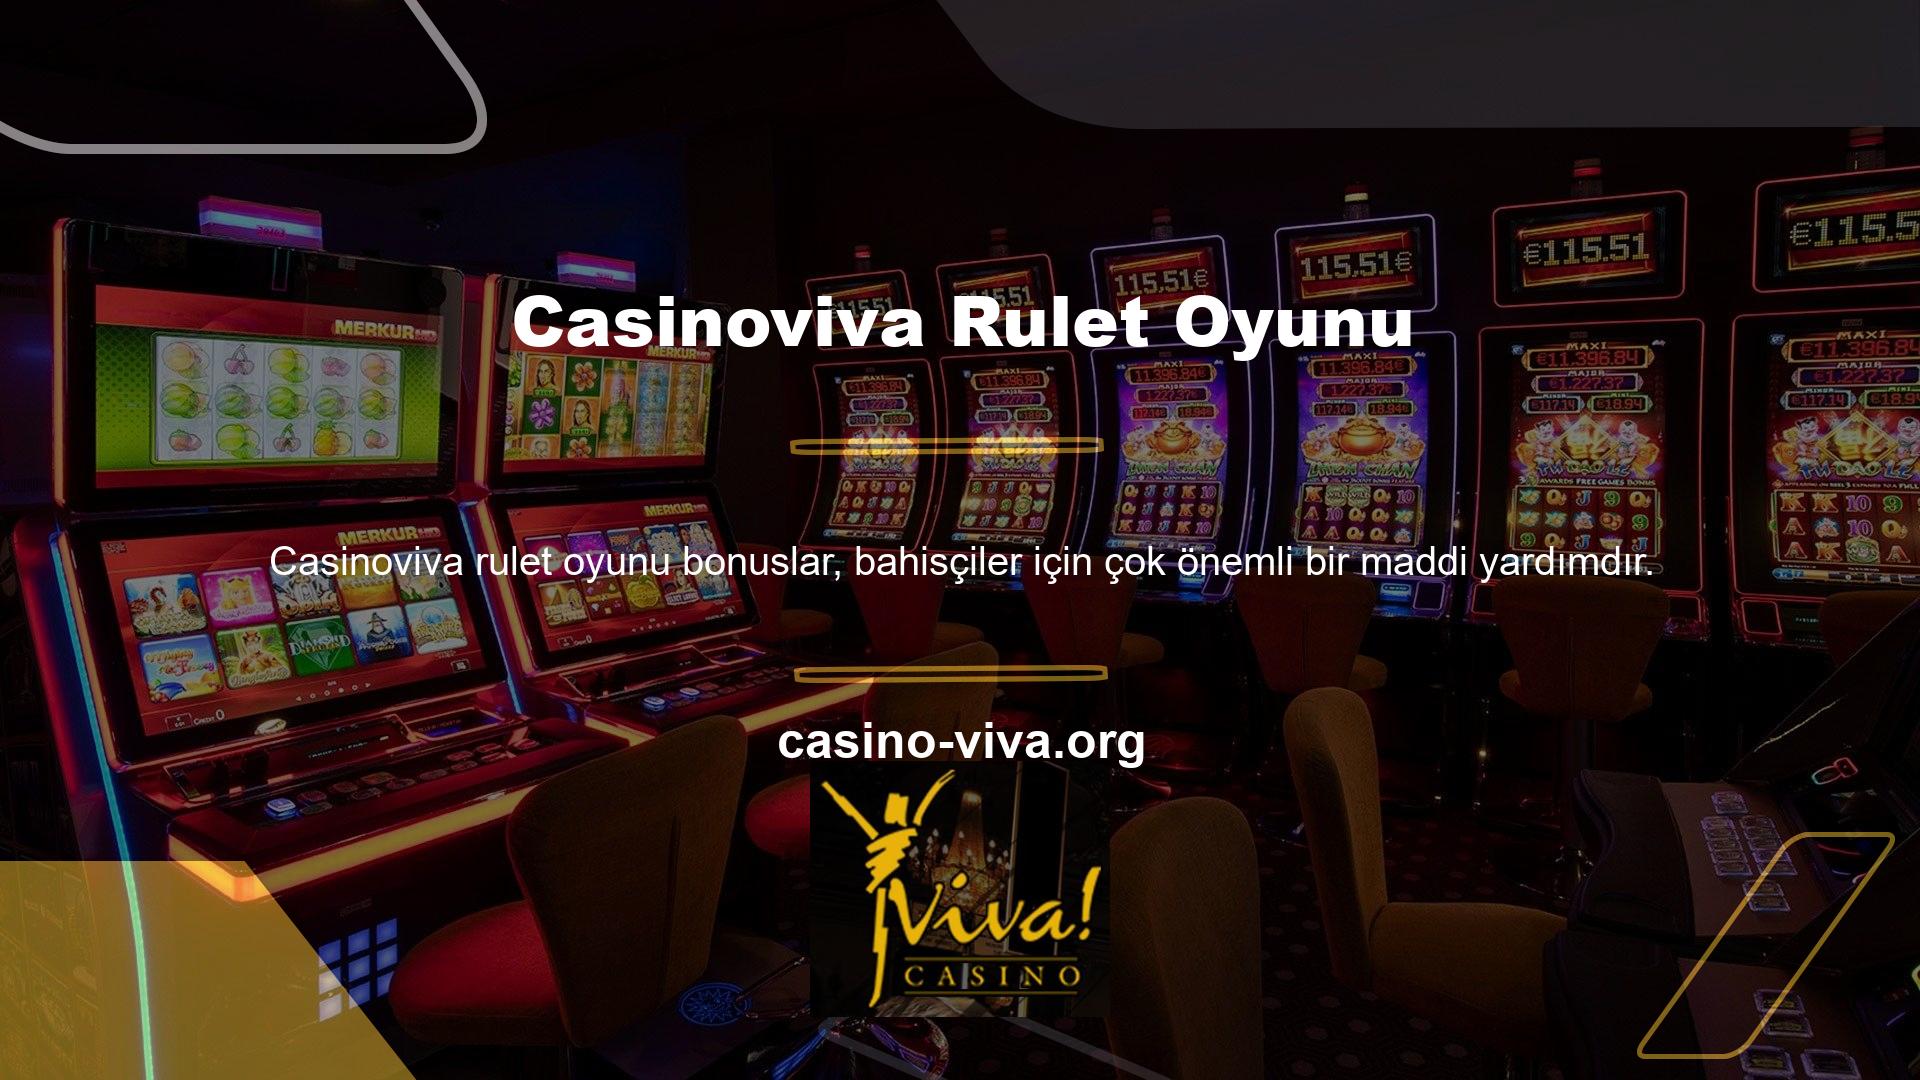 Daha önce de belirttiğimiz gibi Casinoviva oldukça cömert bir bahis sitesidir